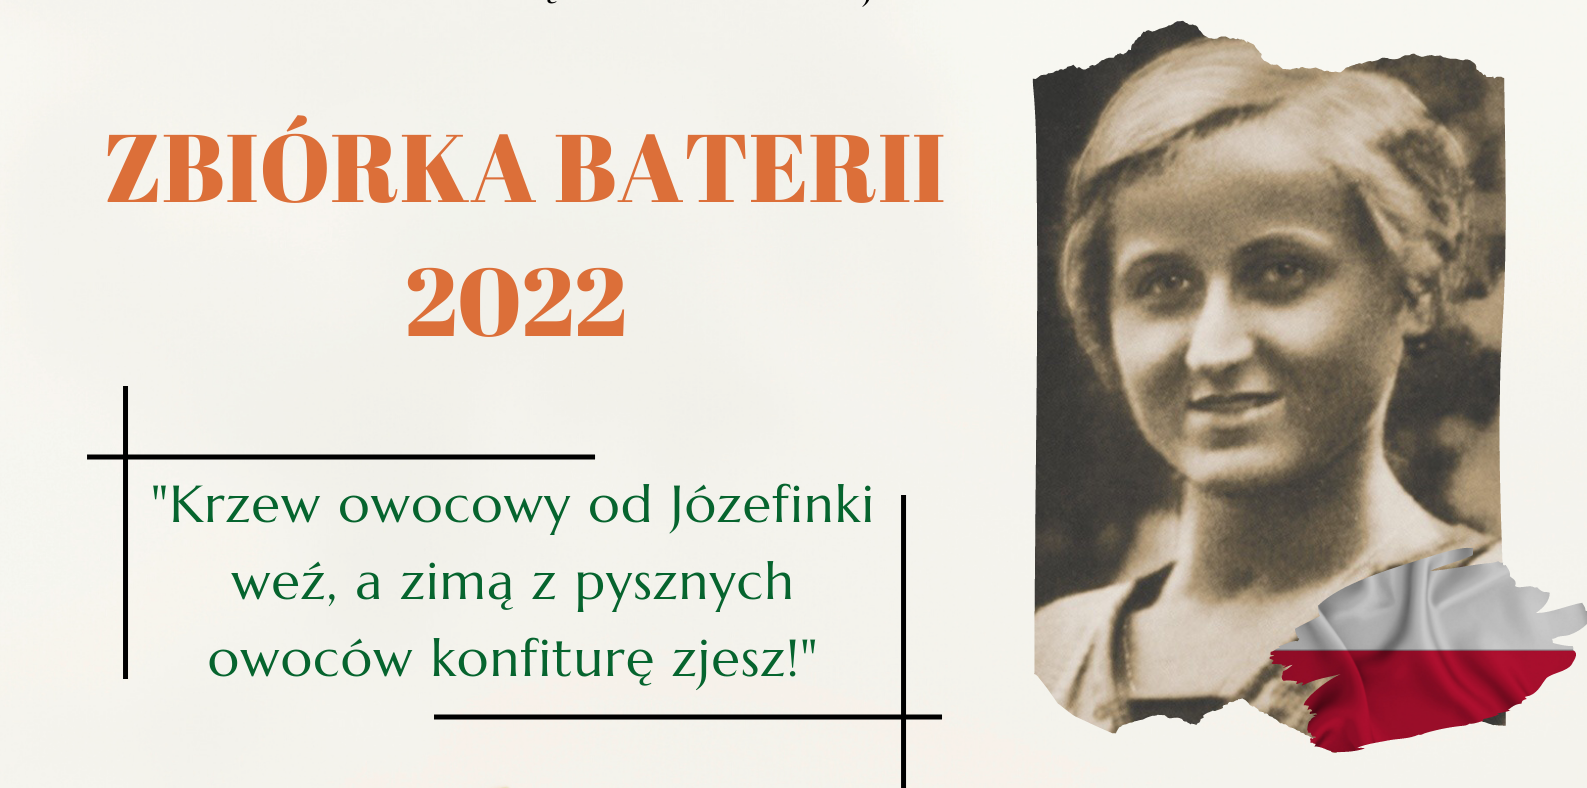 Zbiórka baterii 2022 - Krzew owocowy od Józefinki weź